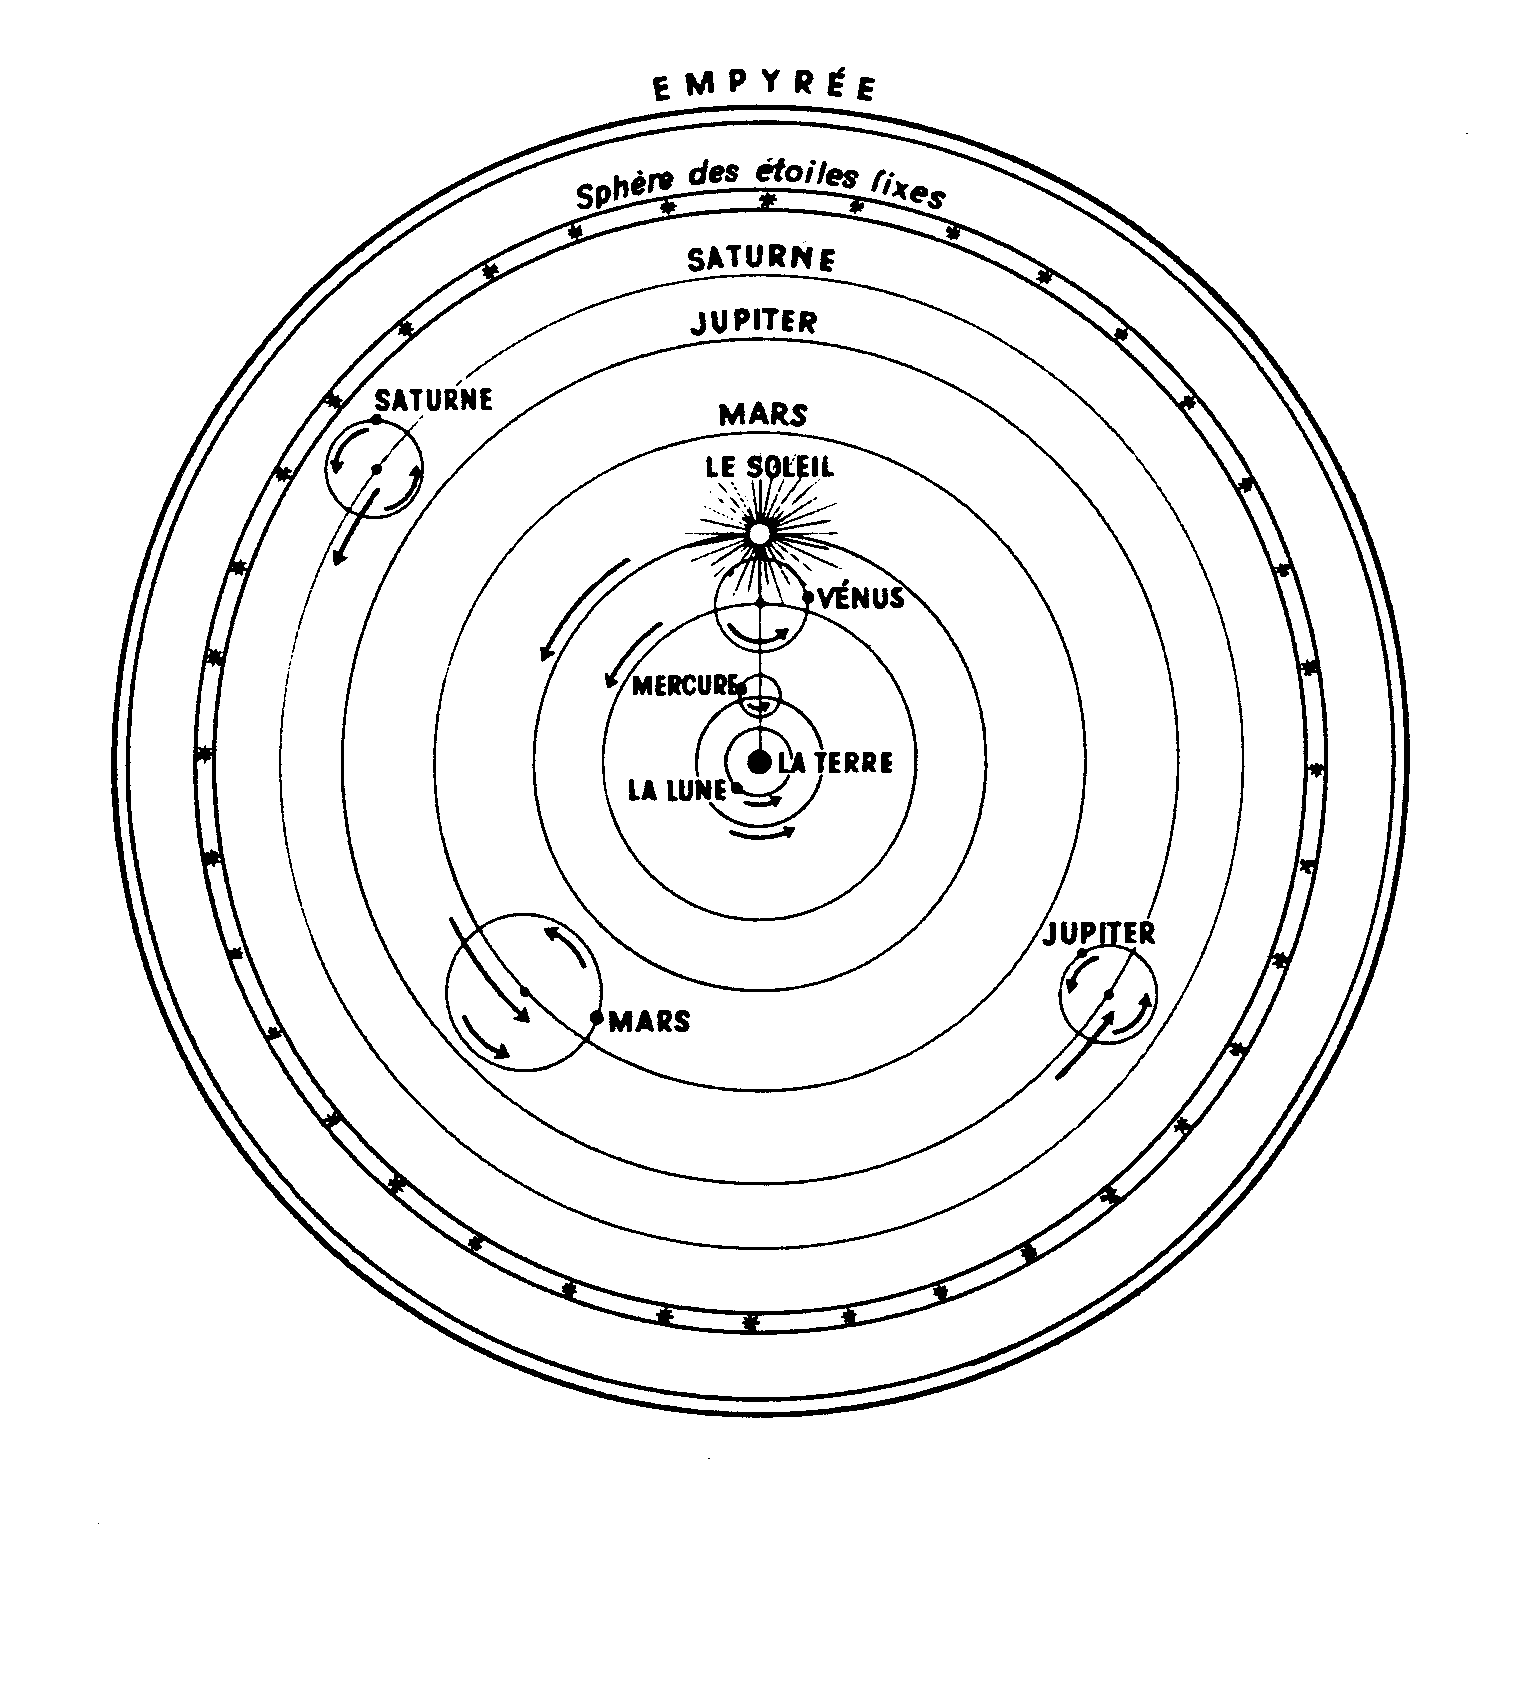 systeme de ptolemee